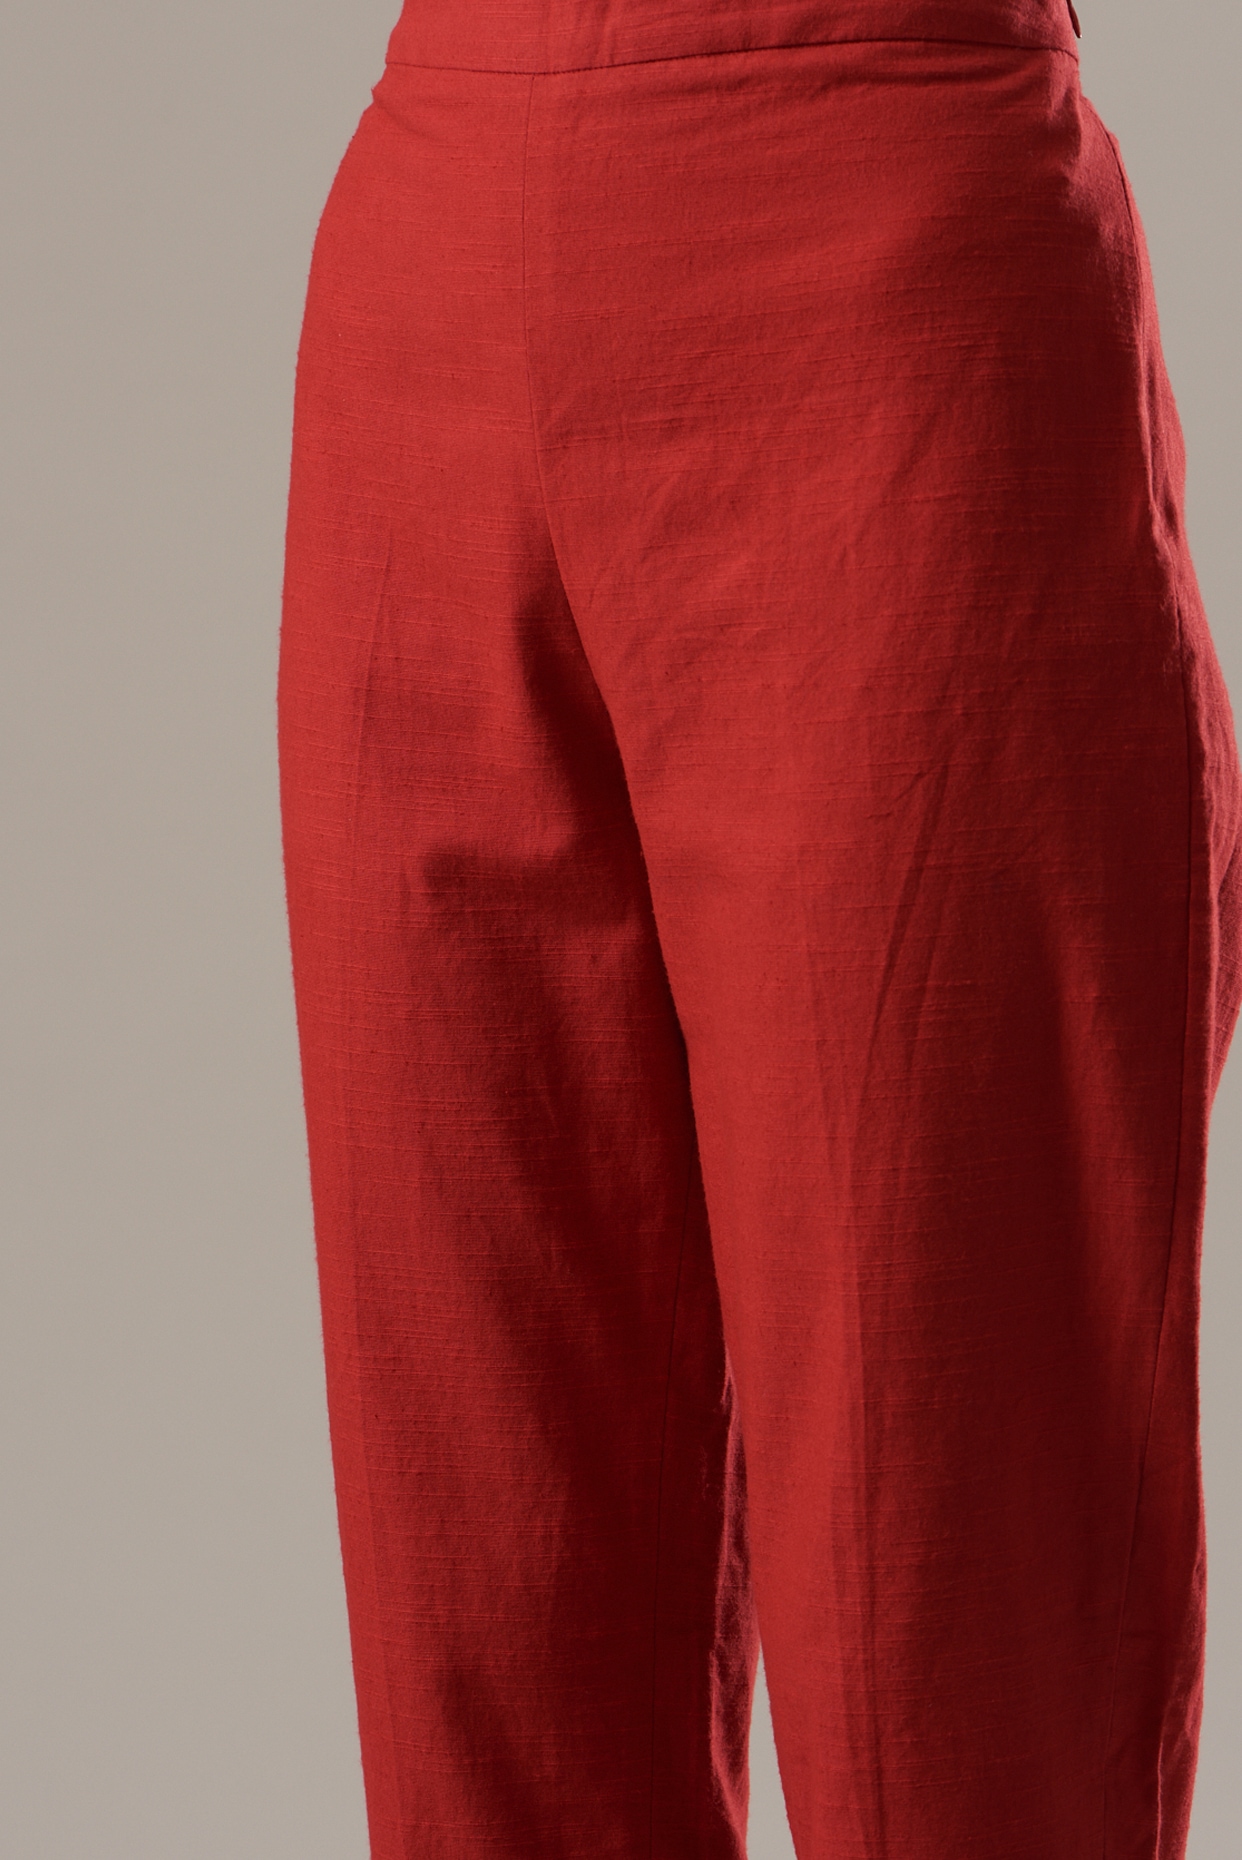 CLEVAA Regular Fit Women Red Trousers  Buy CLEVAA Regular Fit Women Red  Trousers Online at Best Prices in India  Flipkartcom